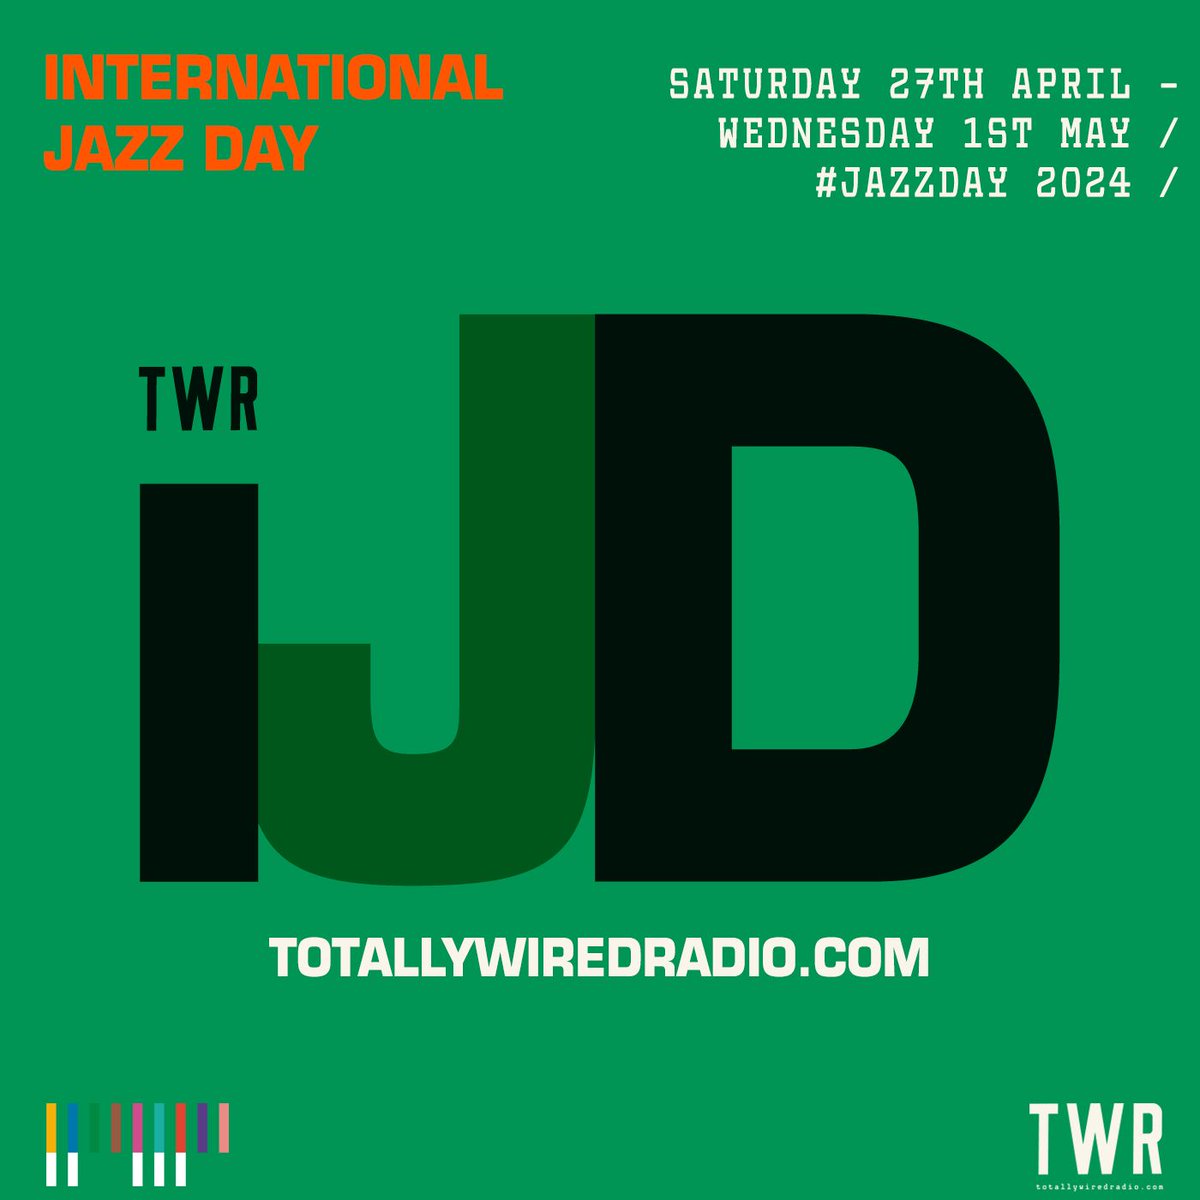 A full 24+ hours of online radio shows w/ TWR to celebrate #JazzDay 2024 @ totallywiredradio.com #nextweek #ijd #internationaljazzday #fullinfocomingsoon